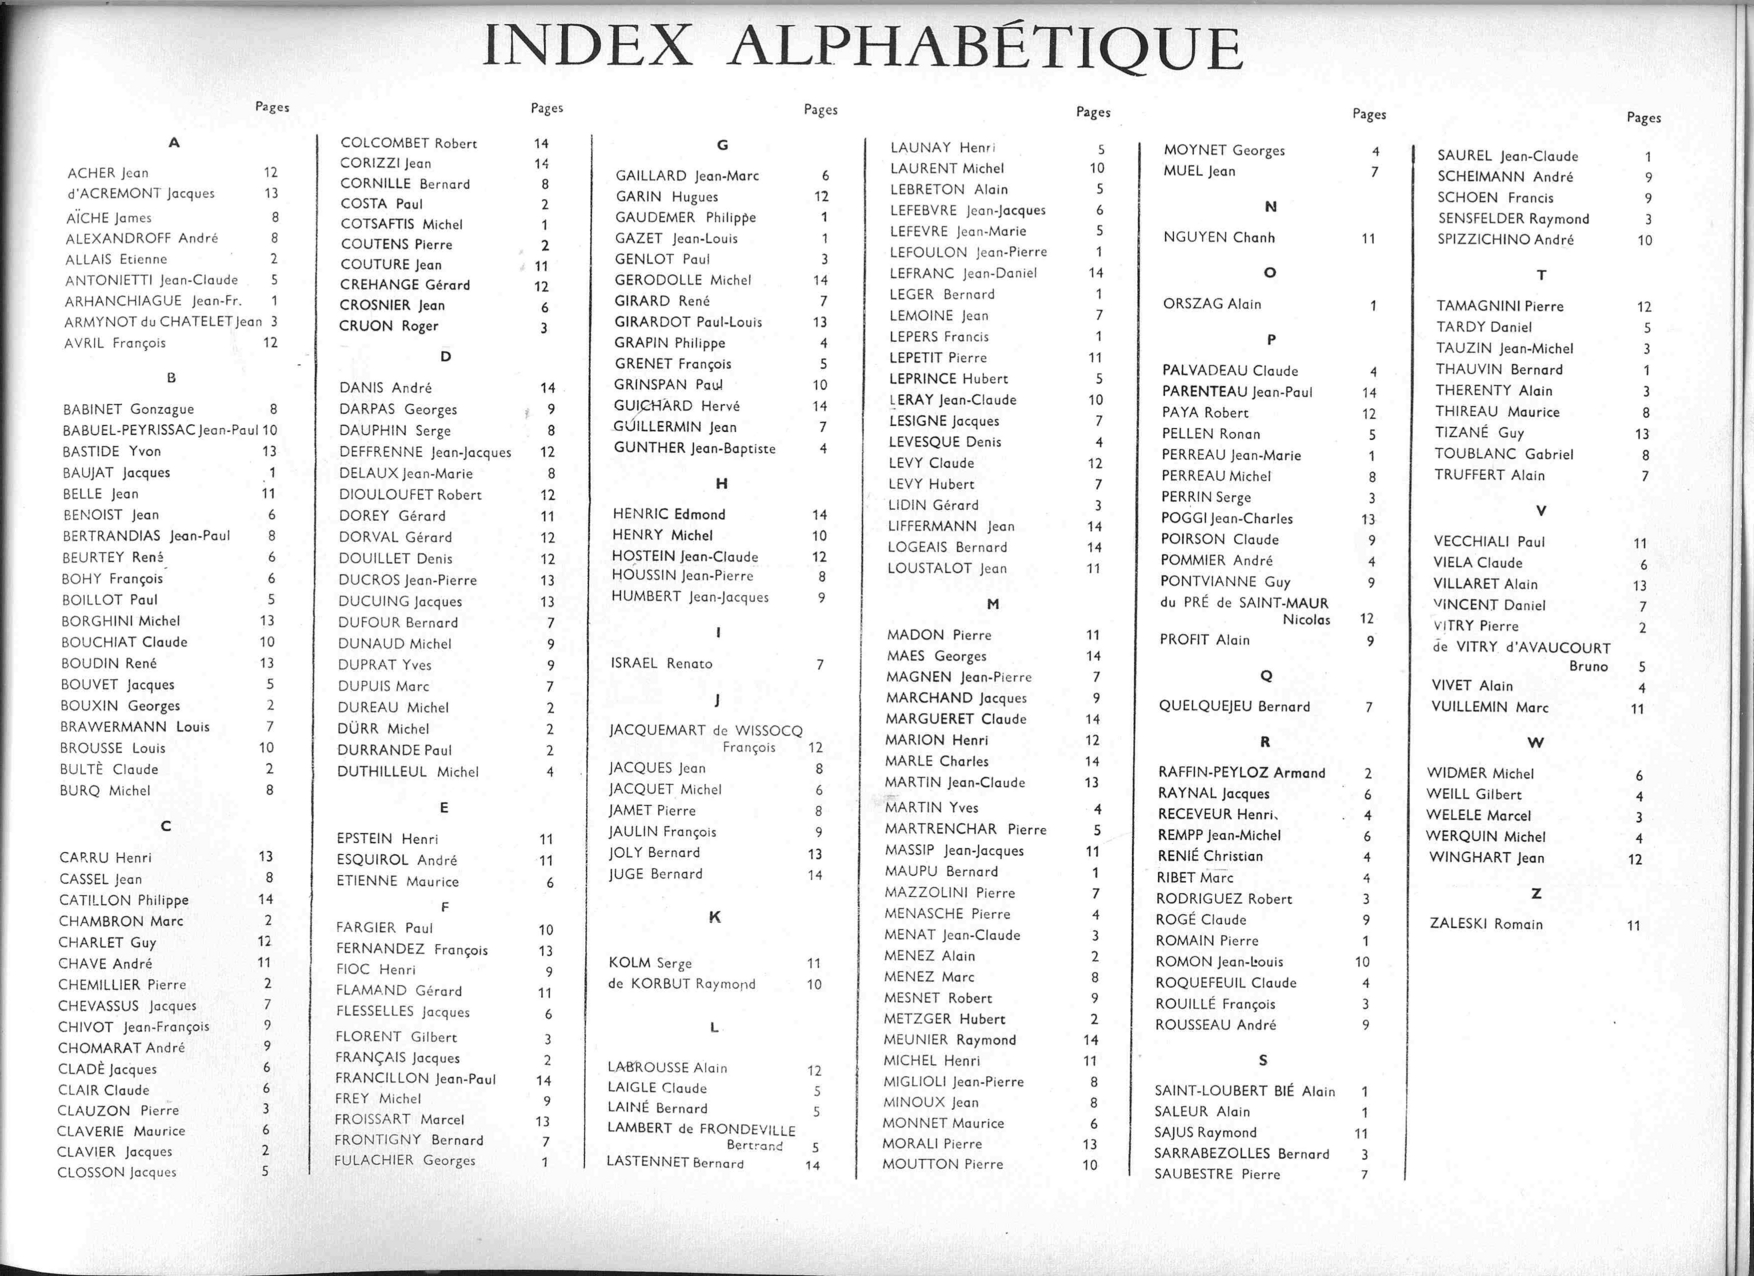 Album de promo X 1953, liste alphabétique des élèves